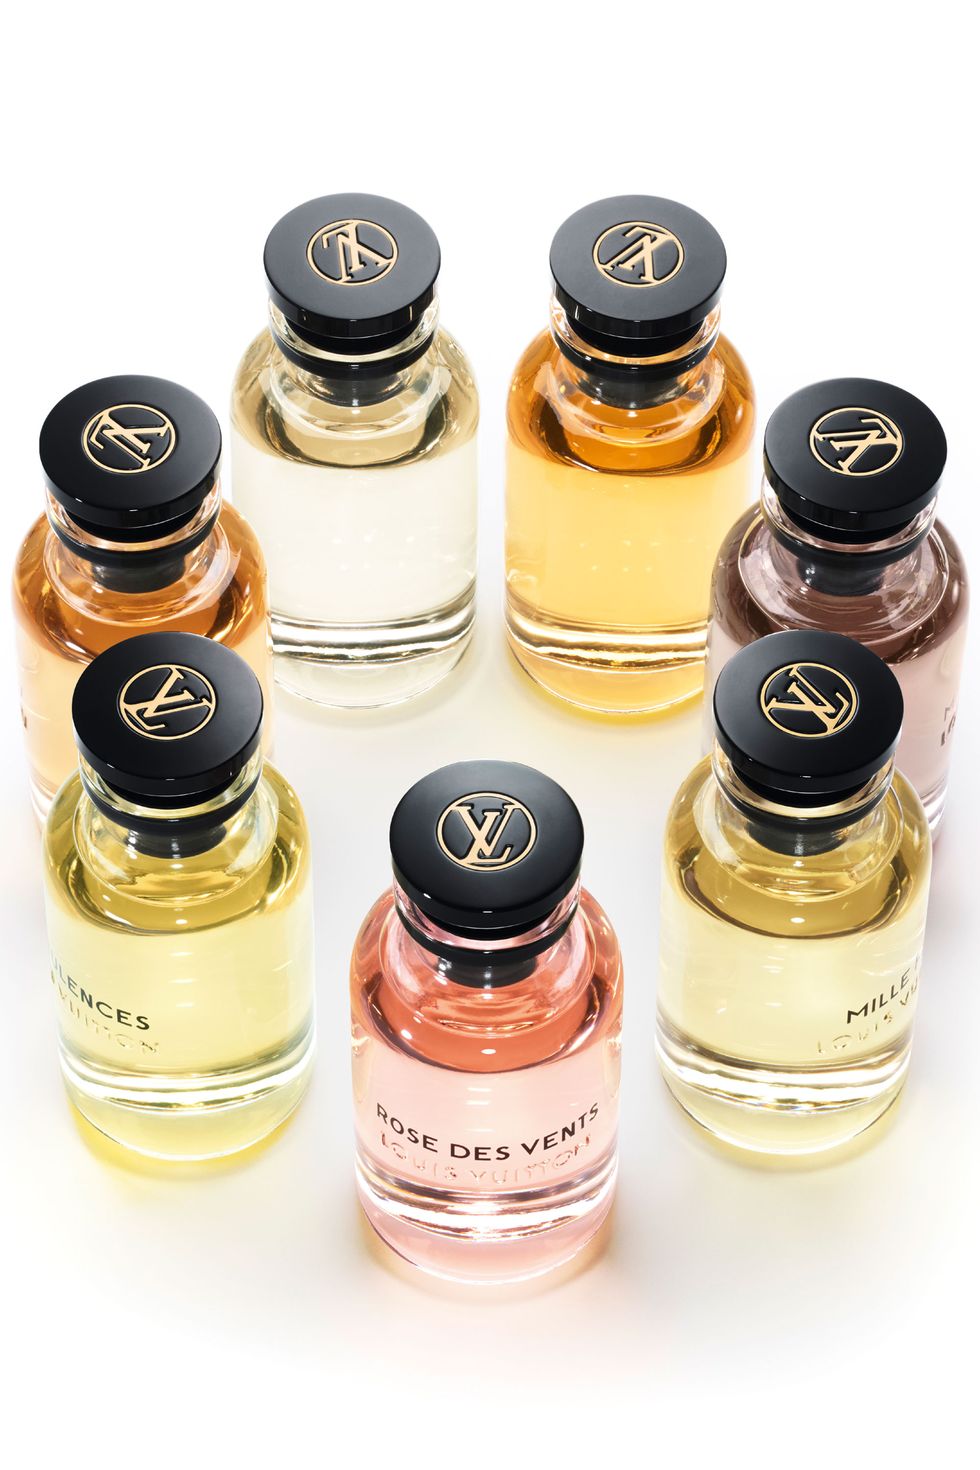 Louis Vuitton fragrances